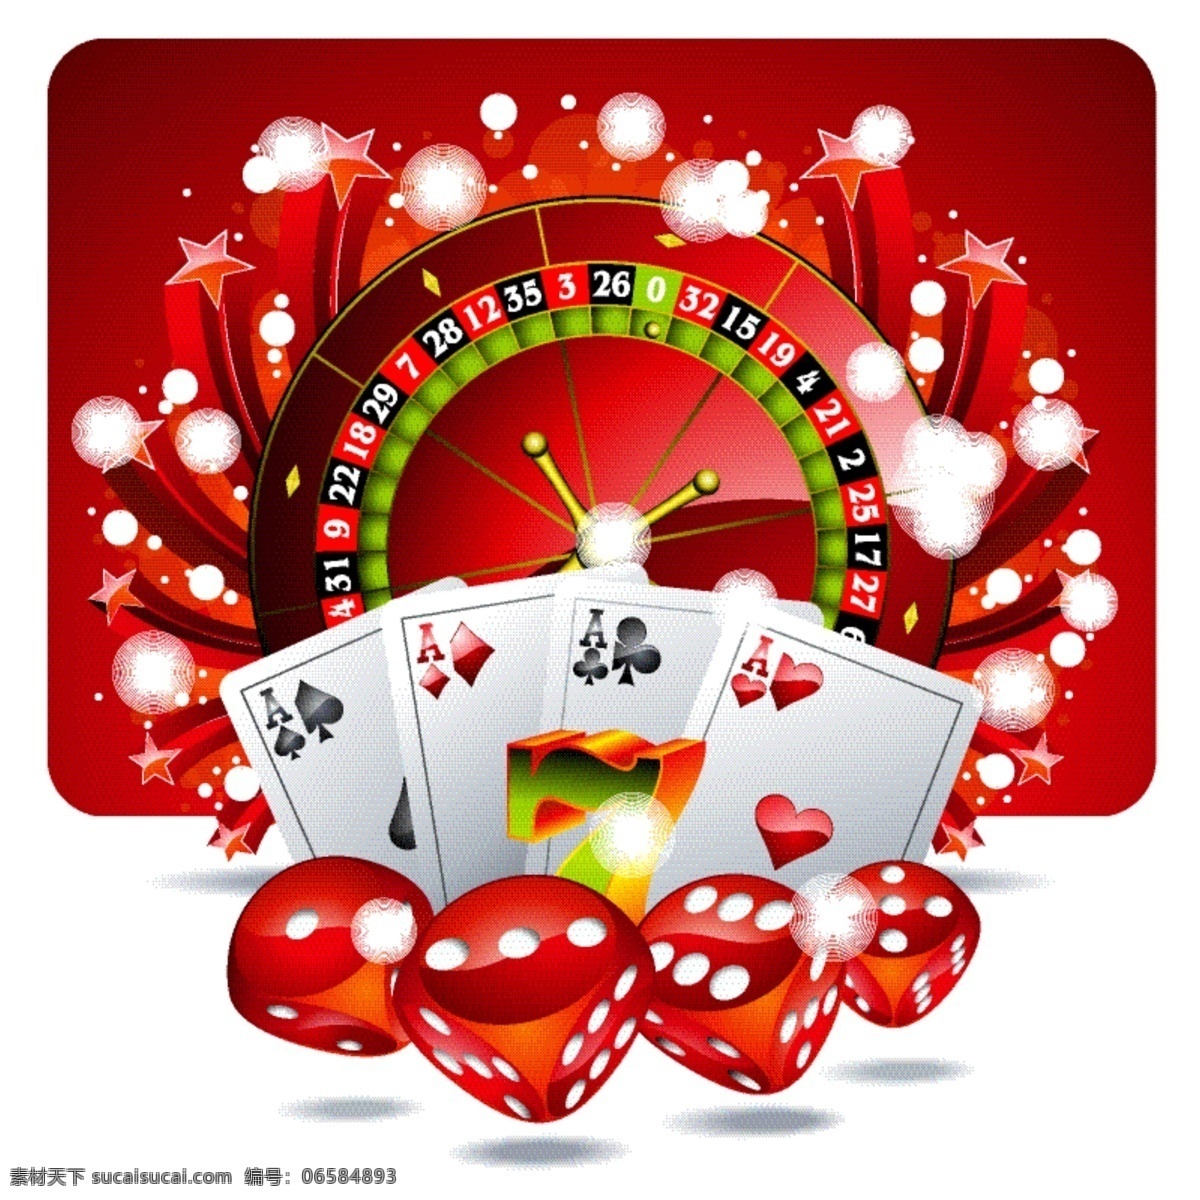 红色 赌场 roullete 背景 颜色 游戏 扑克 骰子 筹码 轮盘赌 运气 冒险 扑克筹码 机会